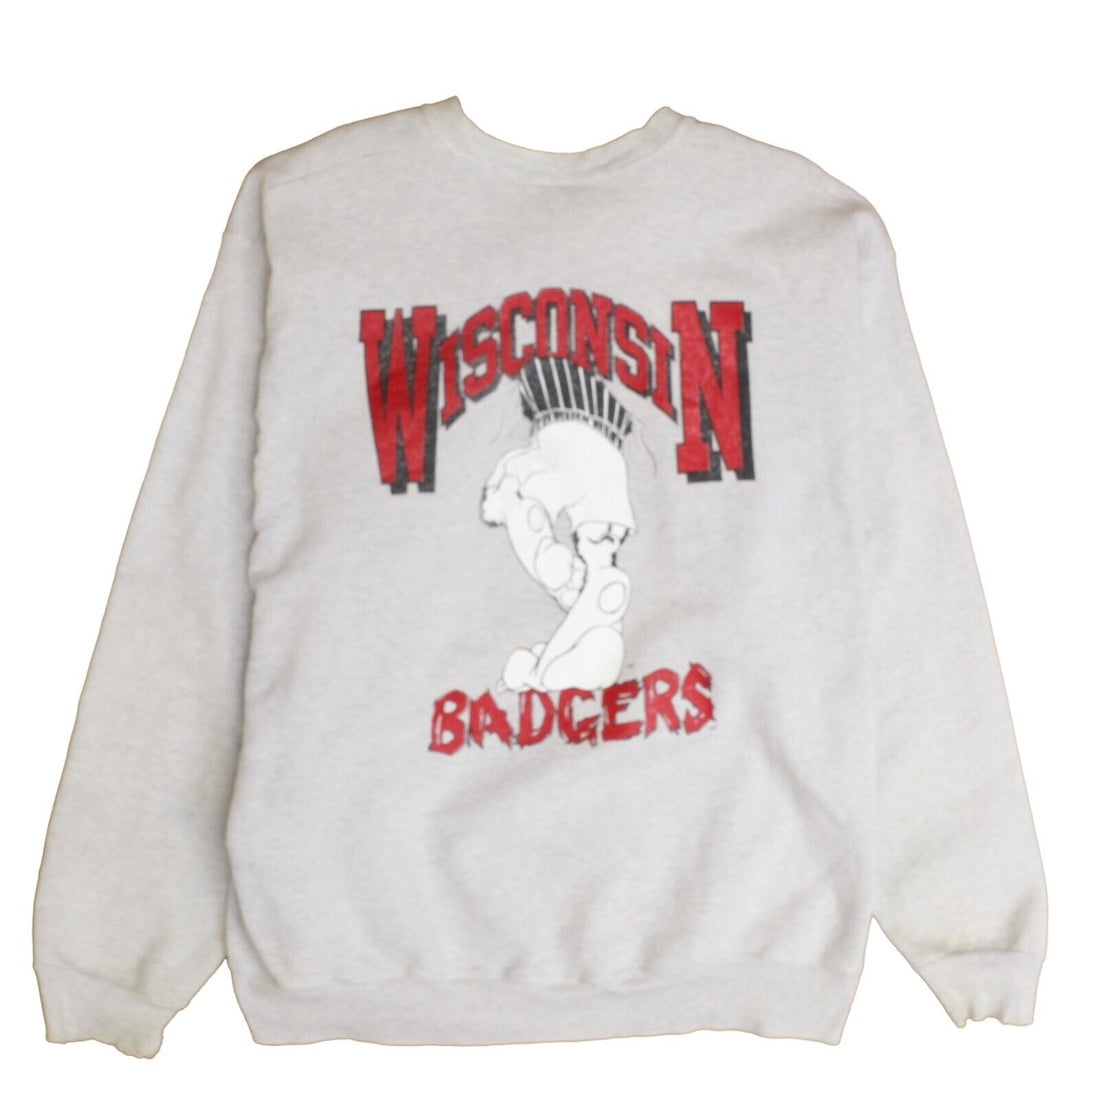 Vintage Wisconsin Badgers Breakthrough Sweatshirt Crewneck Size XL 90s NCAA